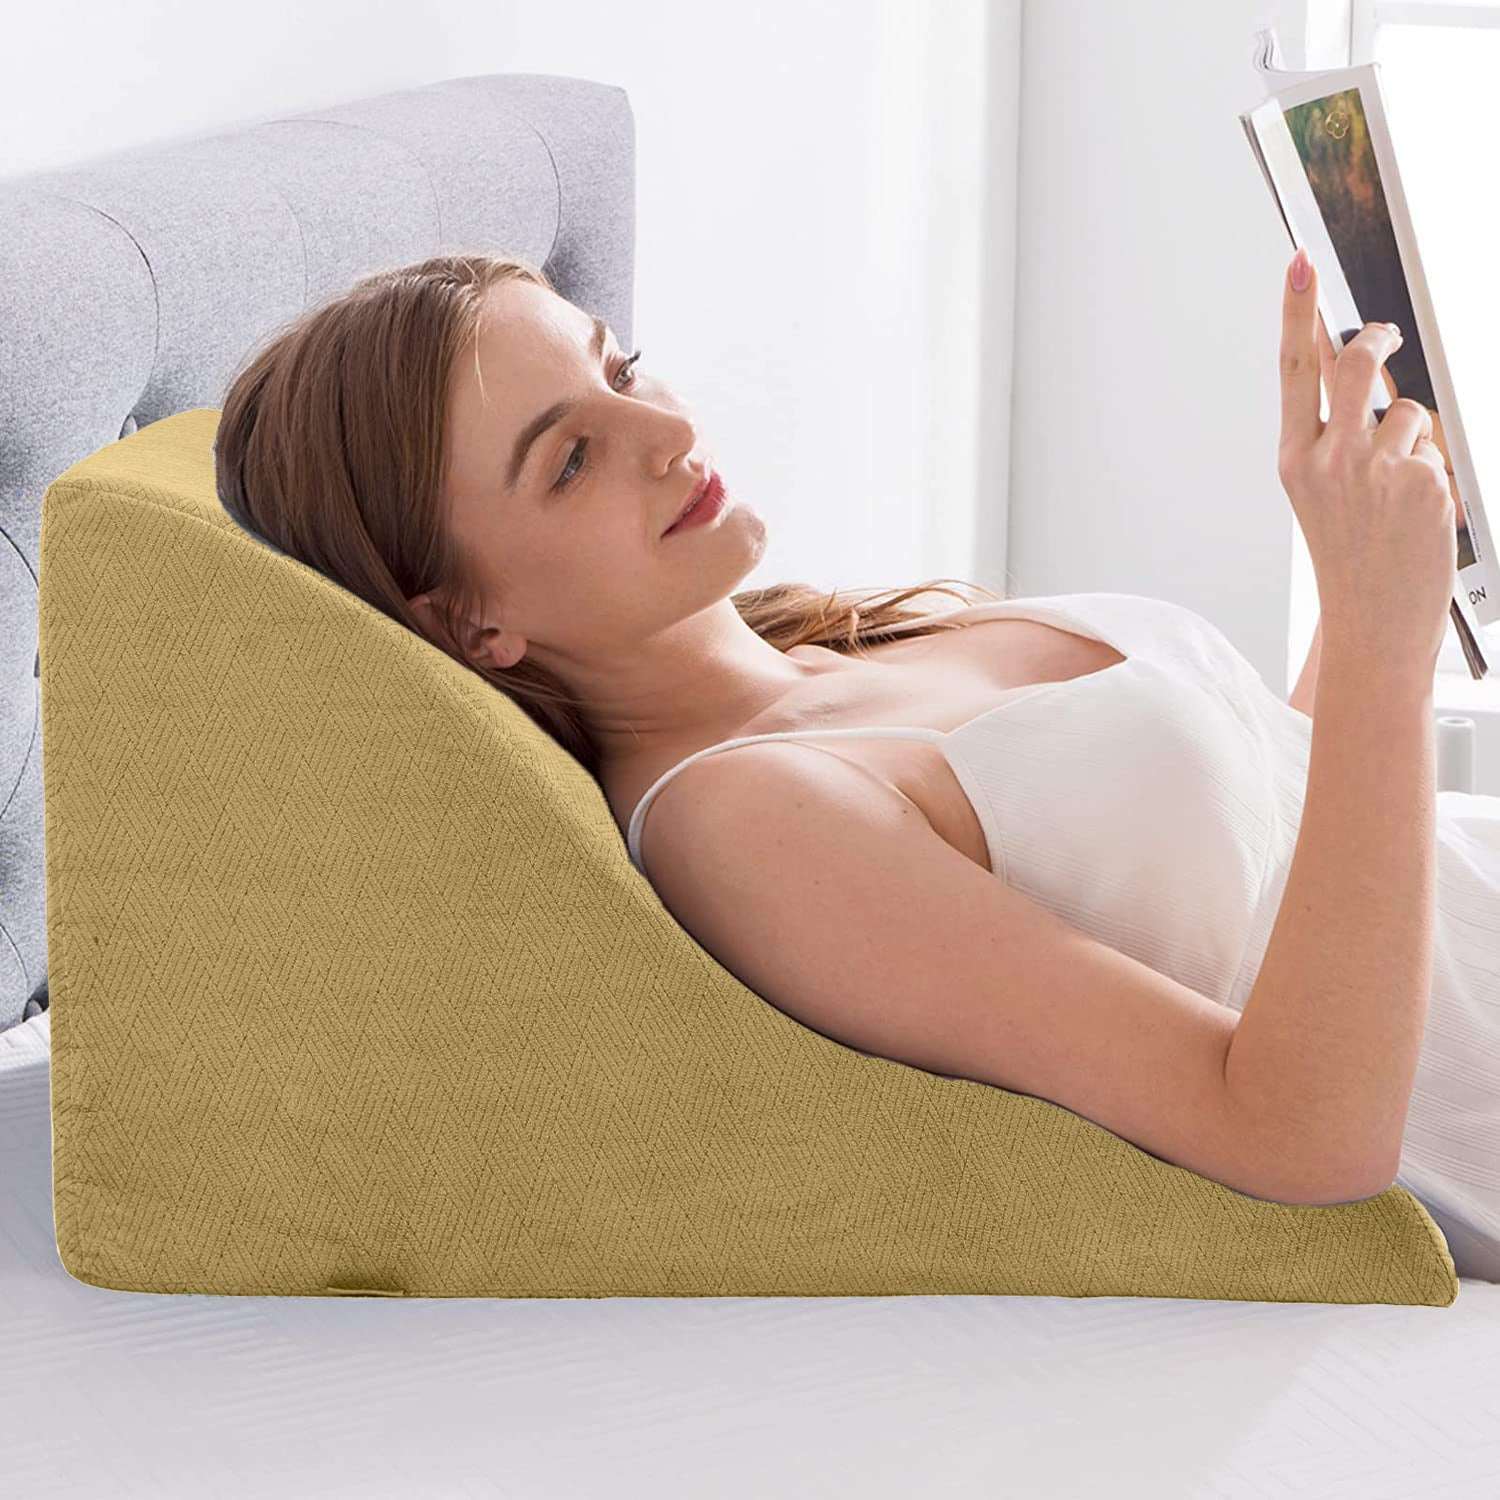 Premium Wedge Lumbar Waist D Support Pillow – Livingful Store